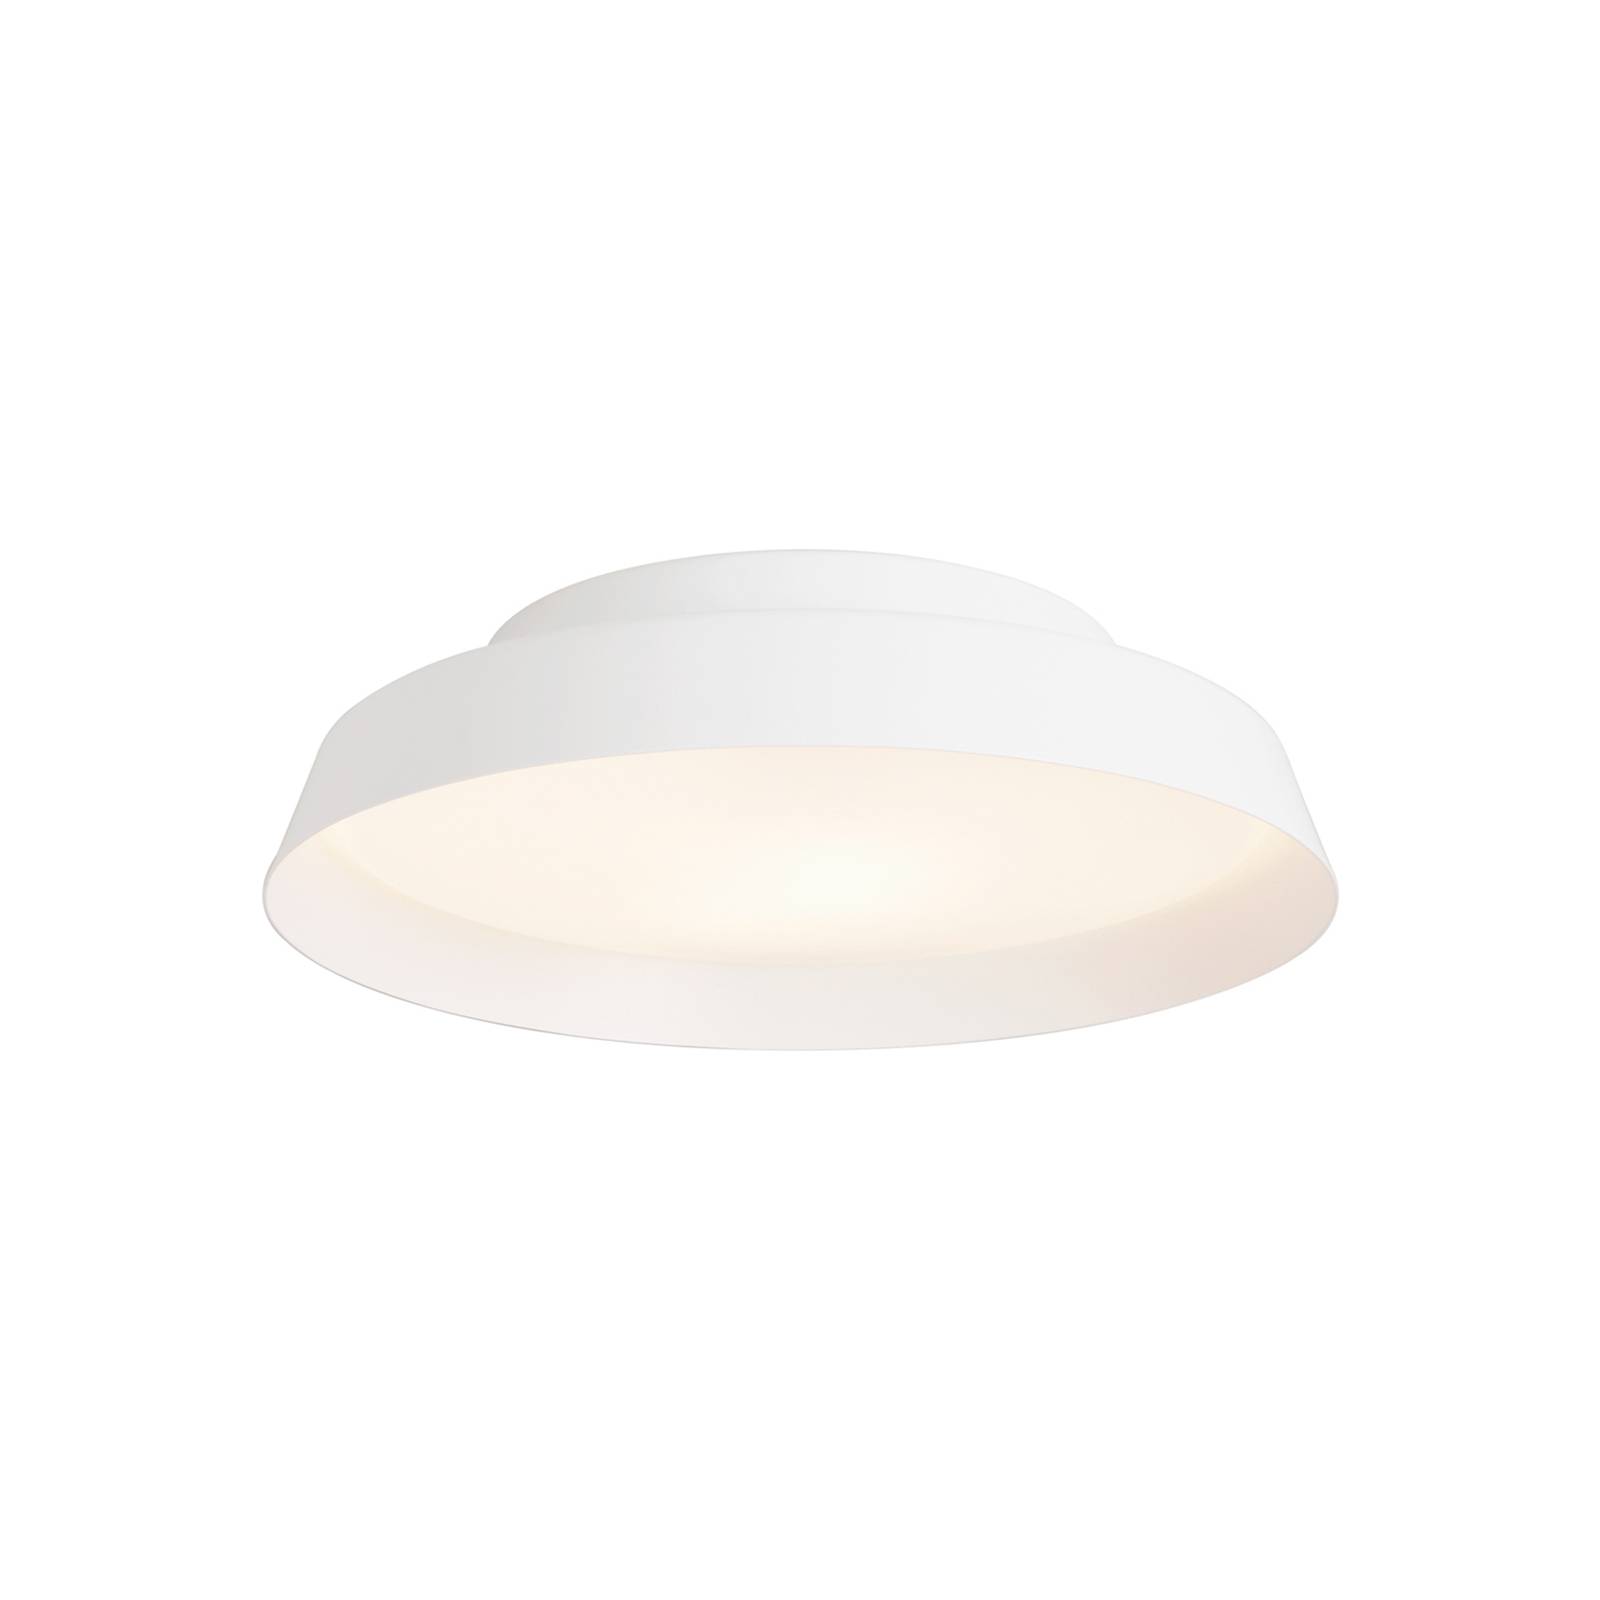 LED mennyezeti világítás Boop! Ø 54 cm fehér/fehér